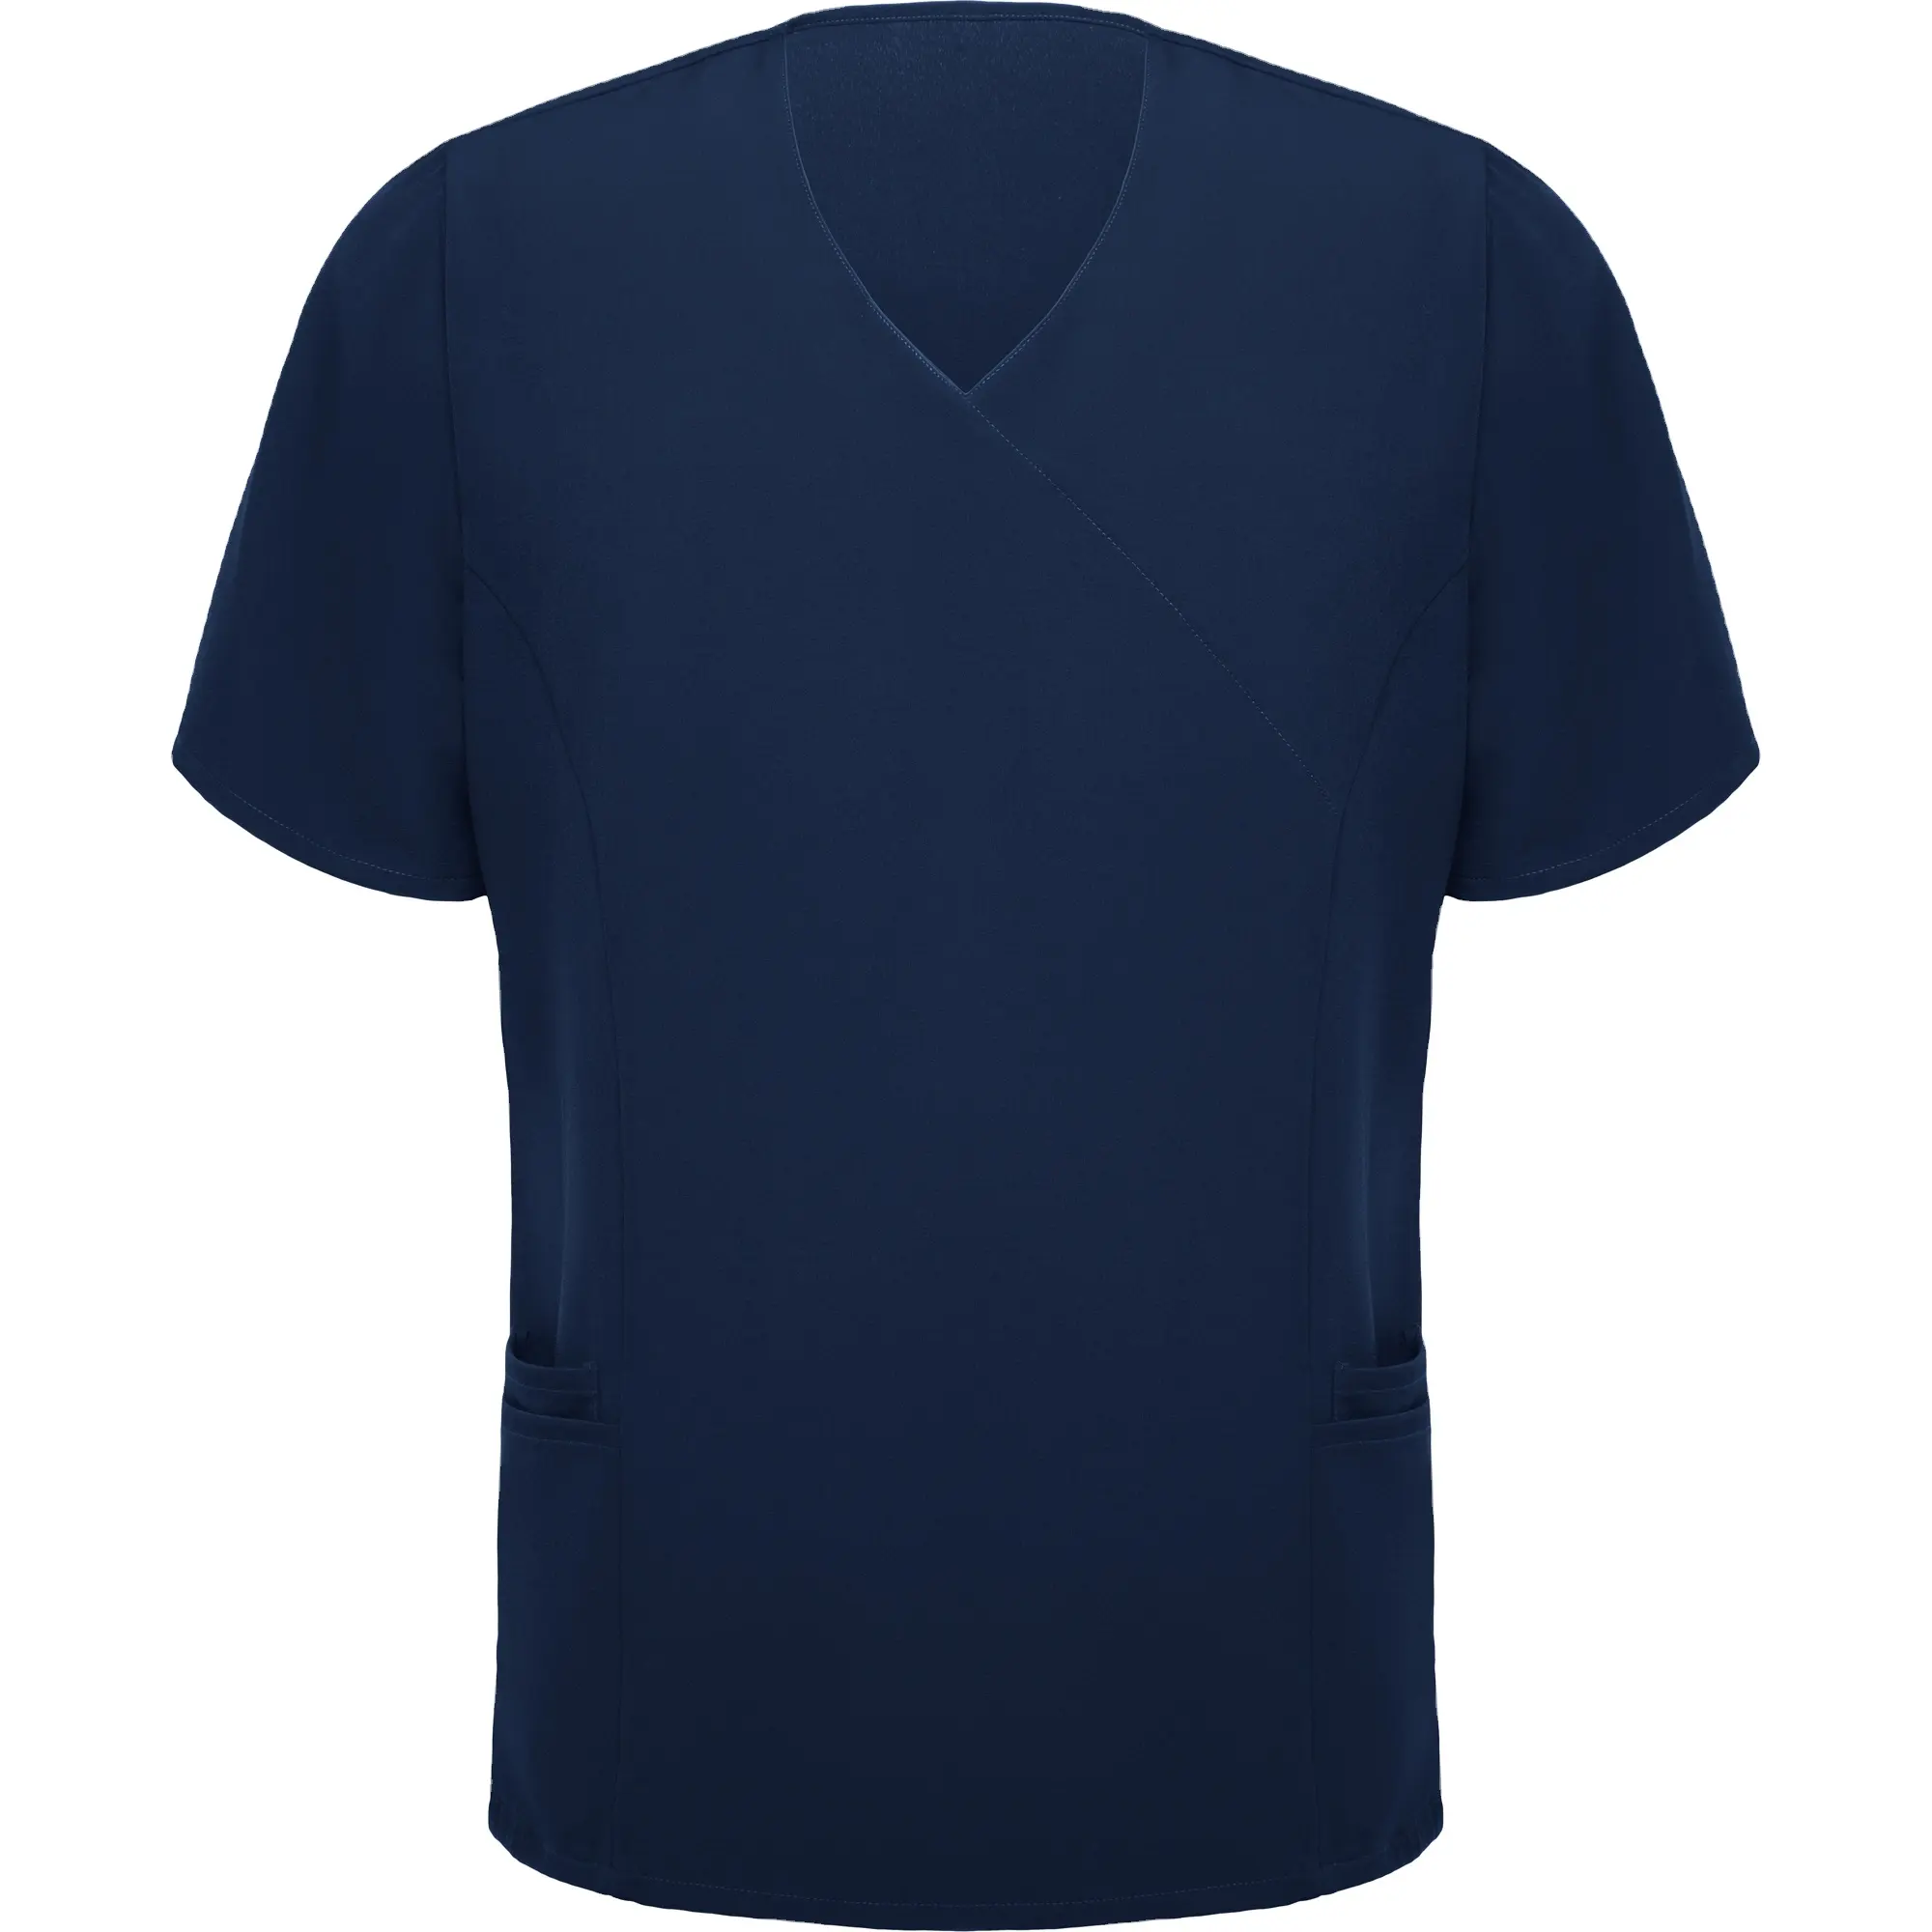 고품질 재료 폴리 에스터 사이드 슬릿 셔츠 블랙 컬러 병원 작업복 병원 작업 유니폼